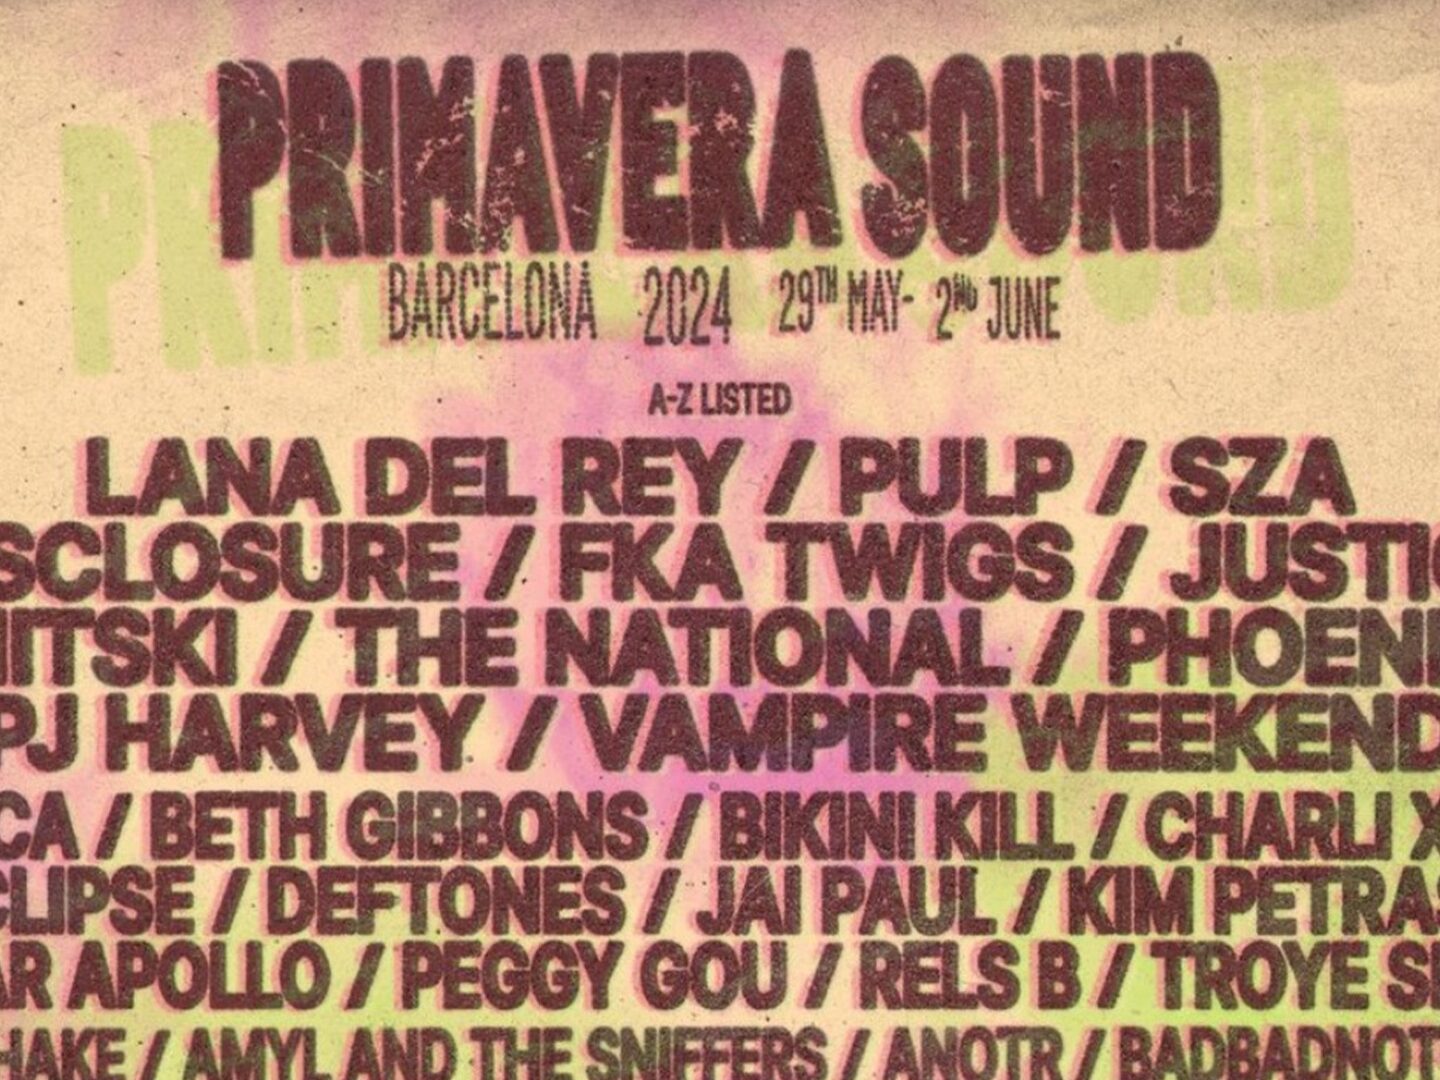 Primavera Sound 2024 unveils its full line-up